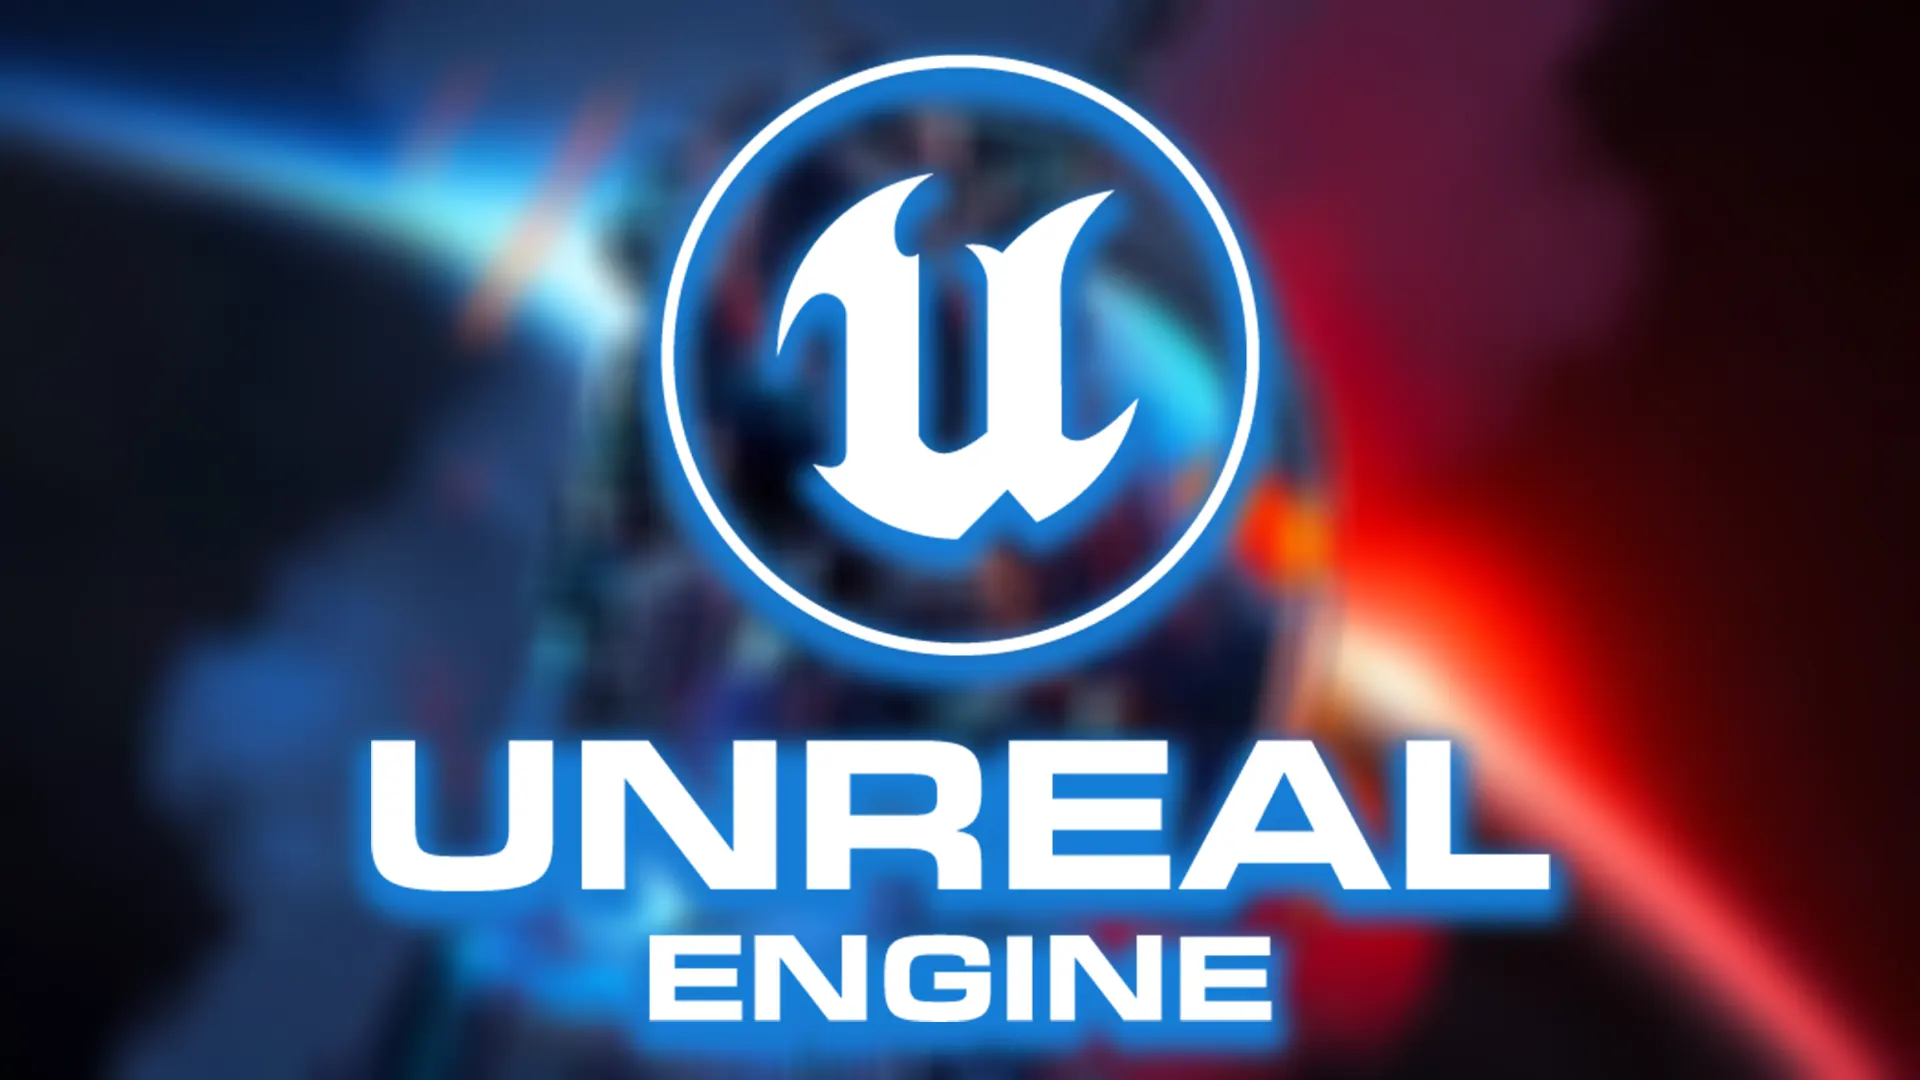 O próximo título da série Mass Effect poderá usar o motor gráfico da Epic Games, a Unreal Engine. Será lançado possivelmente em 2024!